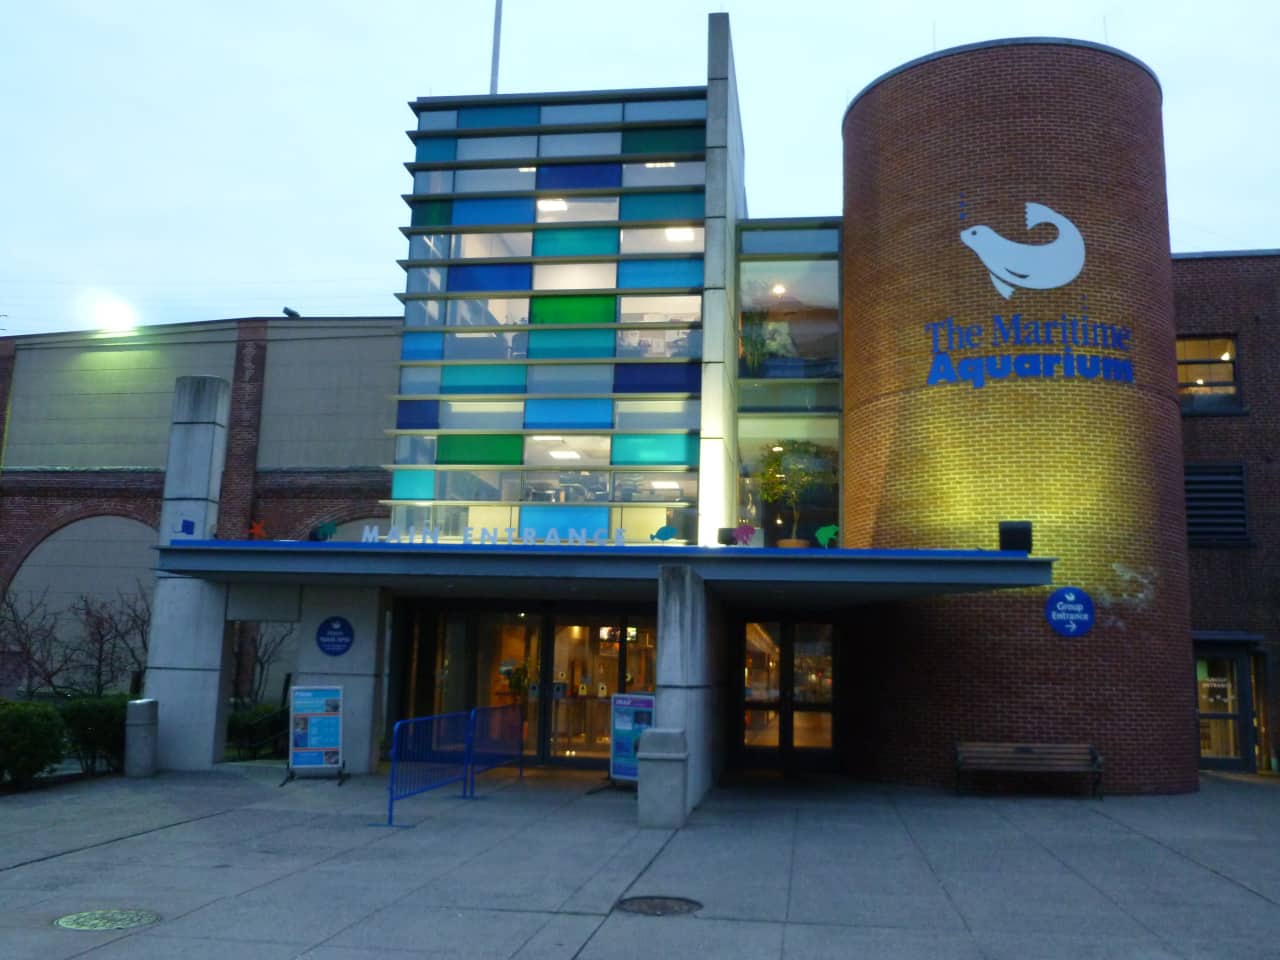 The Maritime Aquarium in Norwalk is offering decreased price for parking.